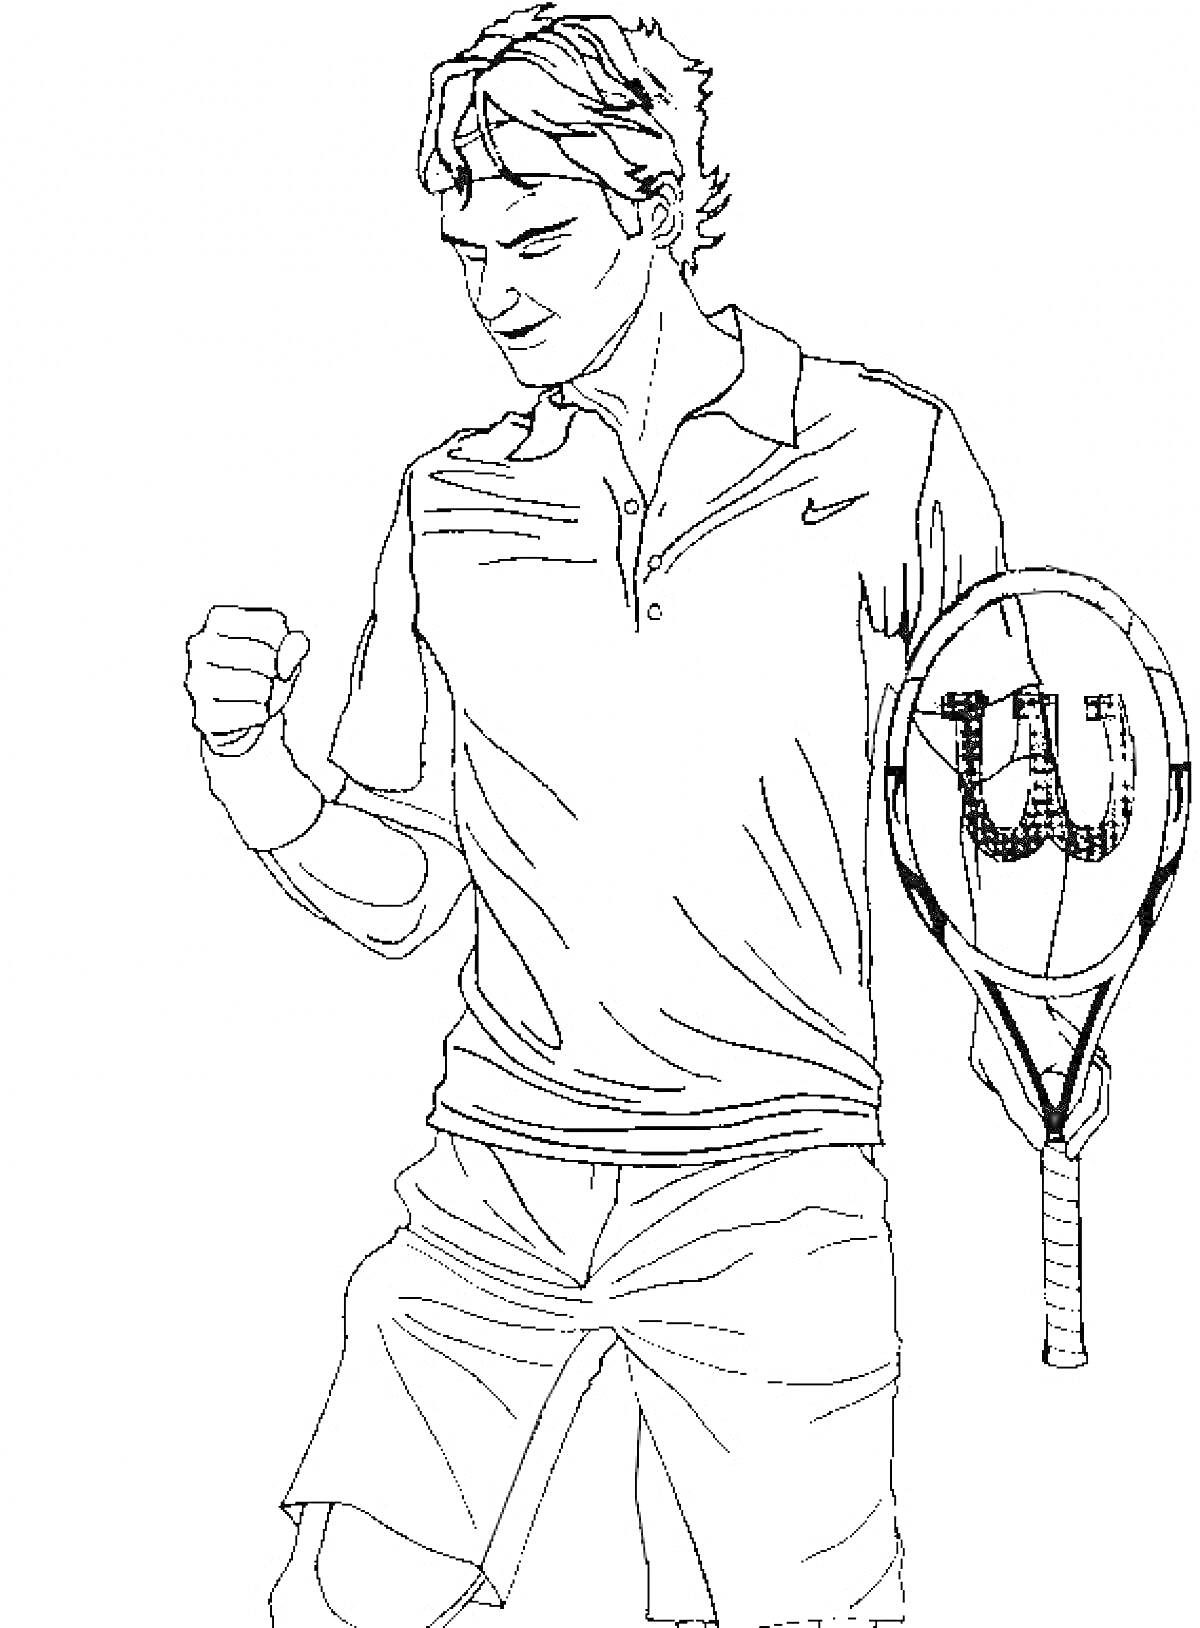 Теннисист с ракеткой и поднятым кулаком